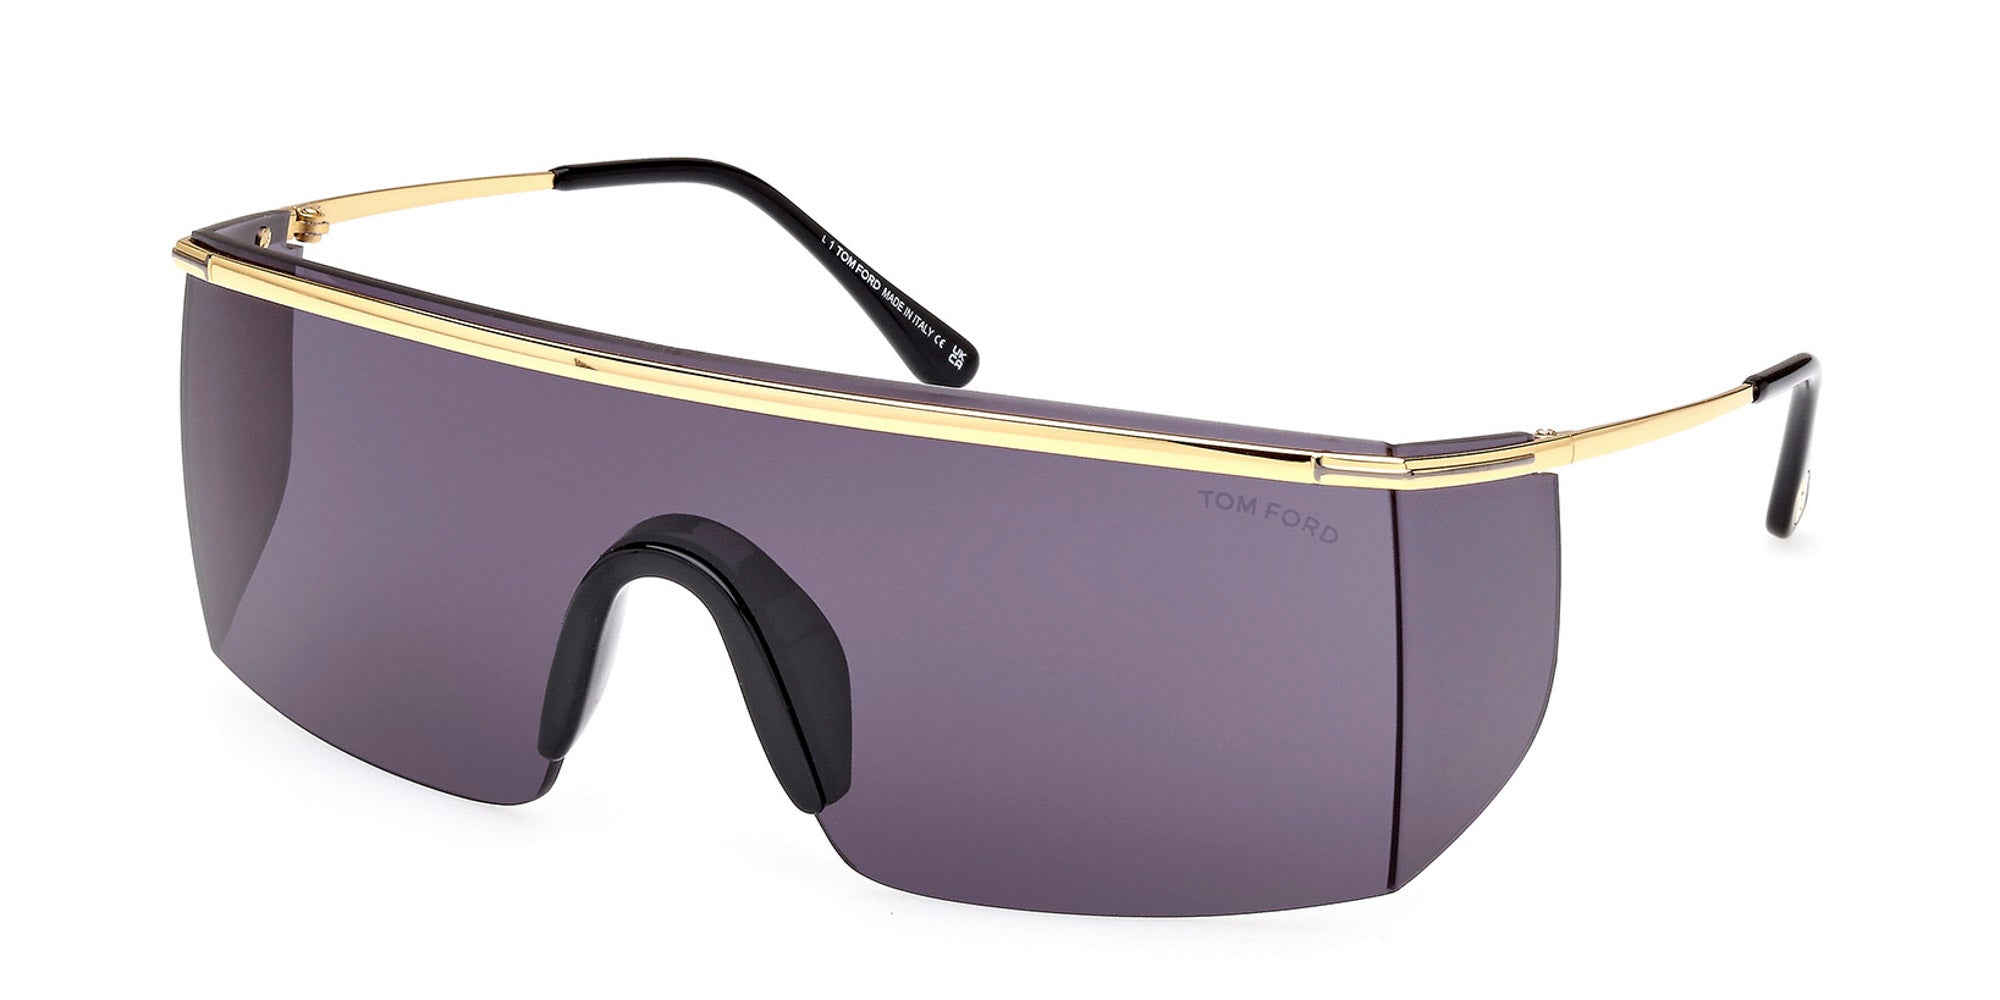 Tom Ford Pavlos-02 TF980 Shield Sunglasses | Fashion Eyewear